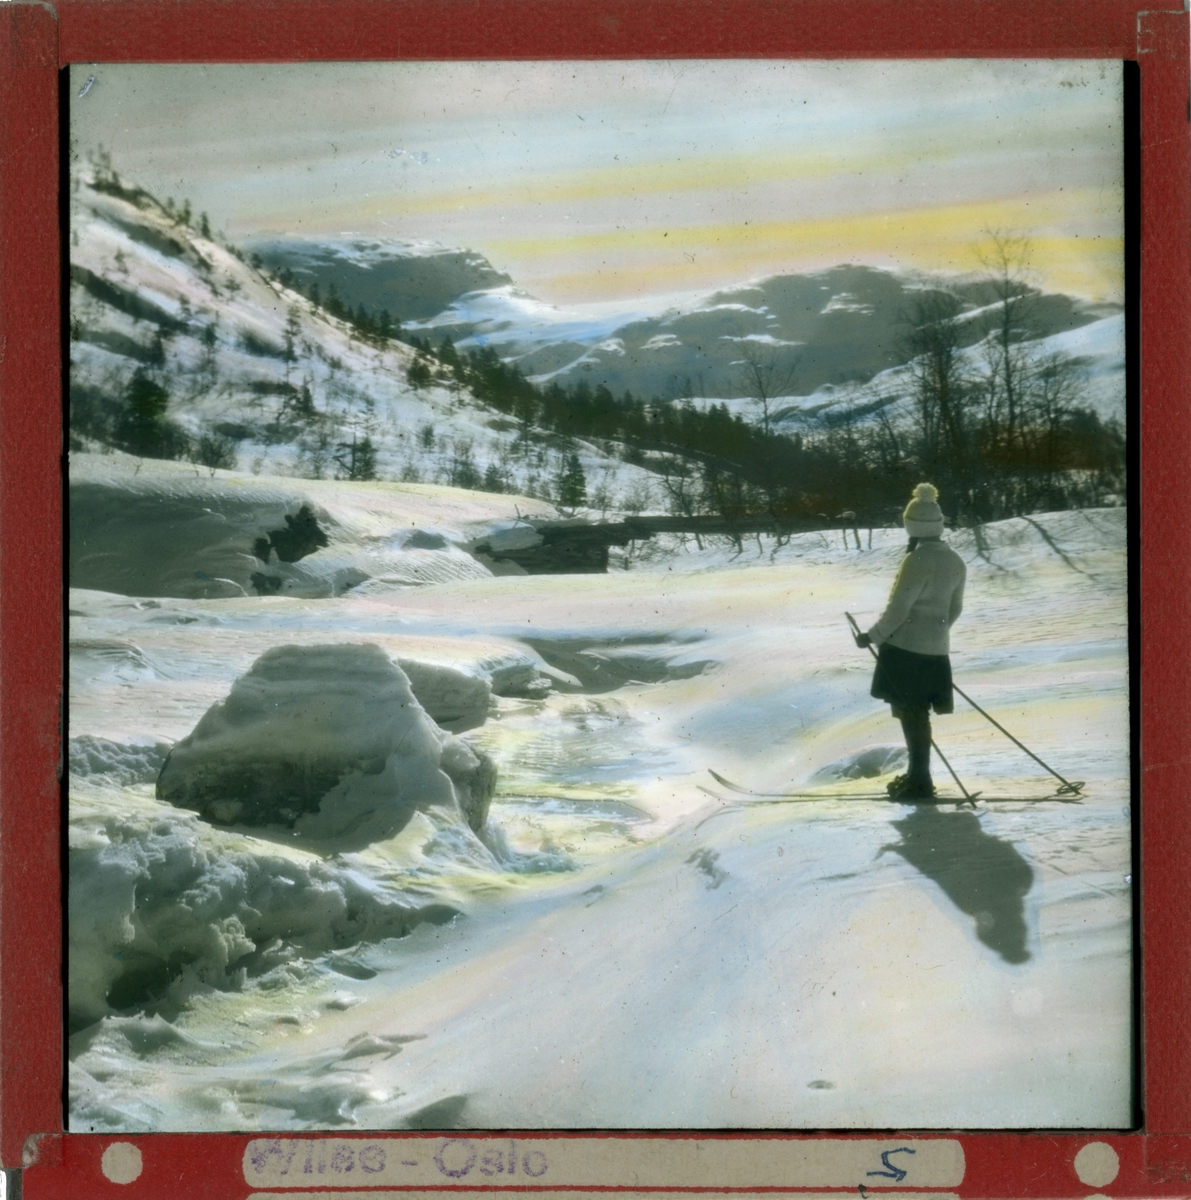 Håndkolorert dias. En kvinne på ski nyter utsikten over et vinterlandskap med fjell og skog.